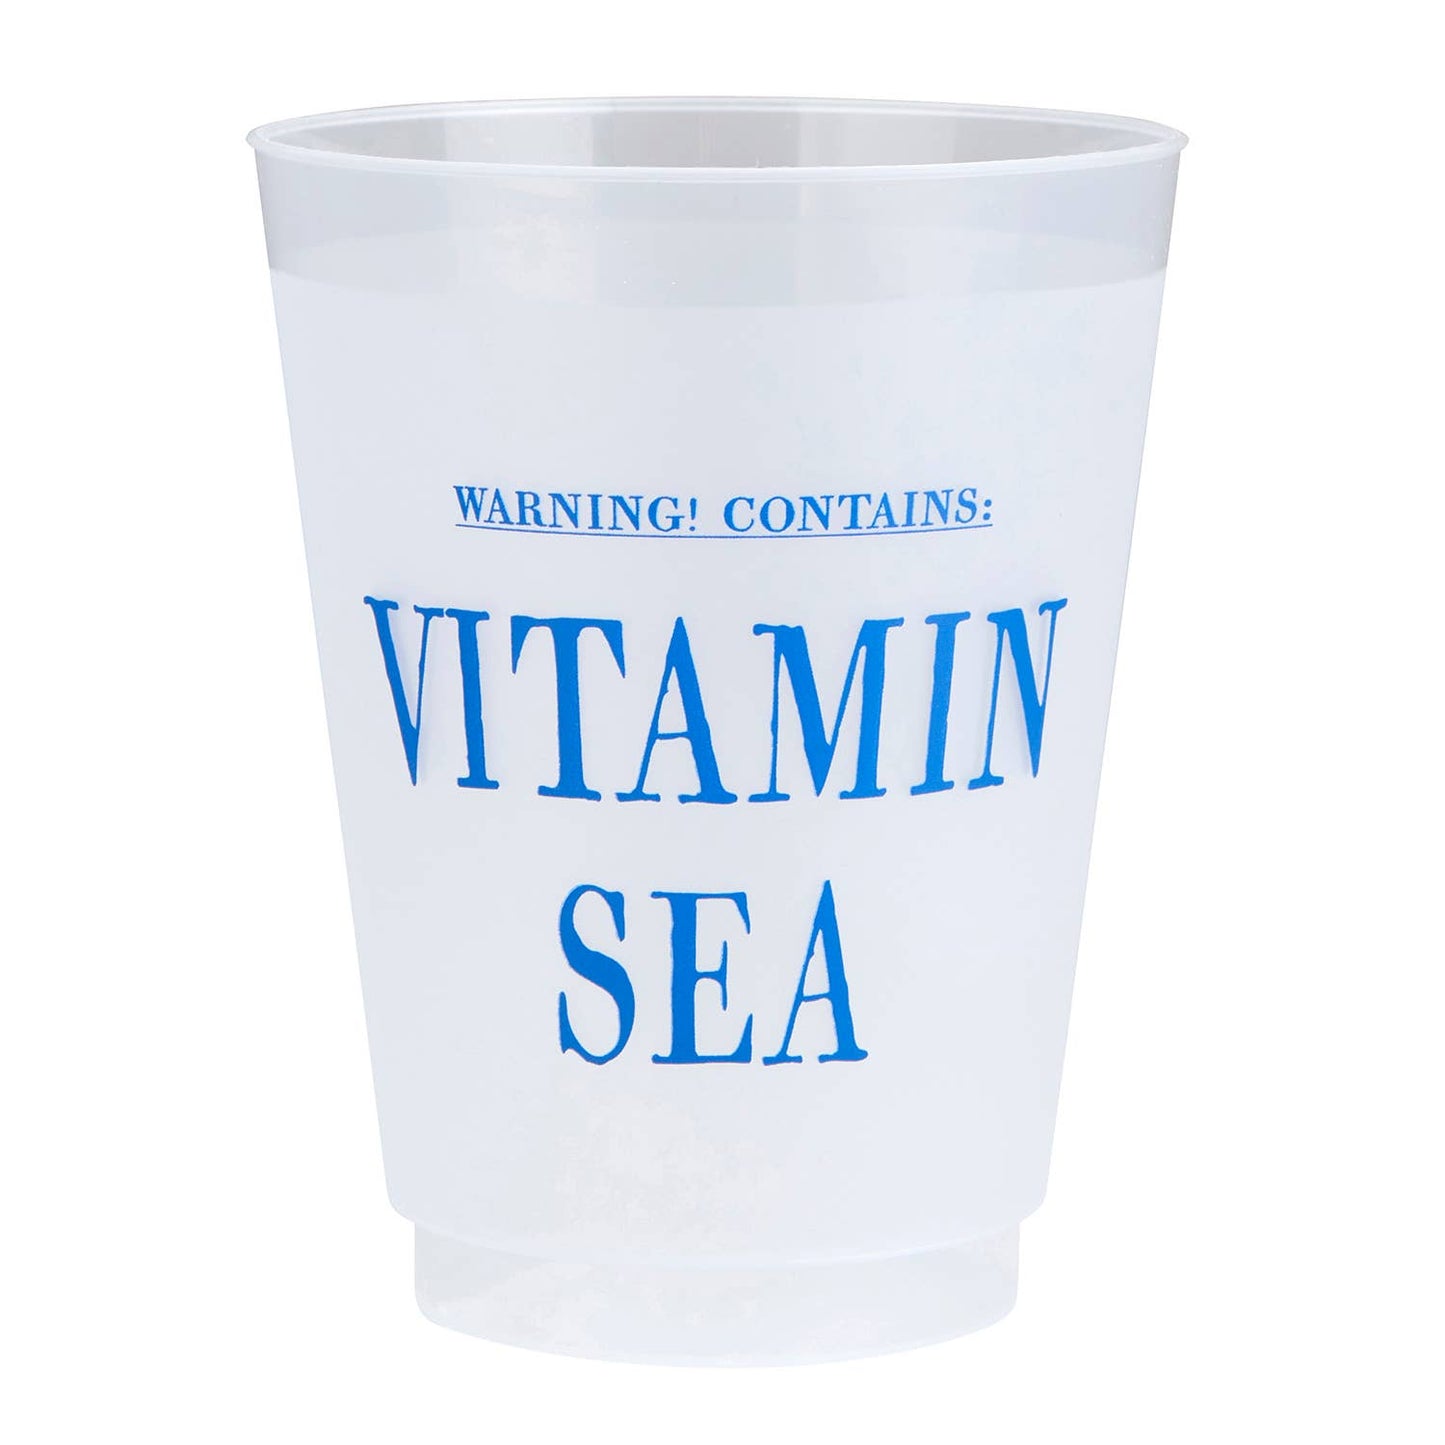 Vitamin Sea 16 oz. Reusable Cup